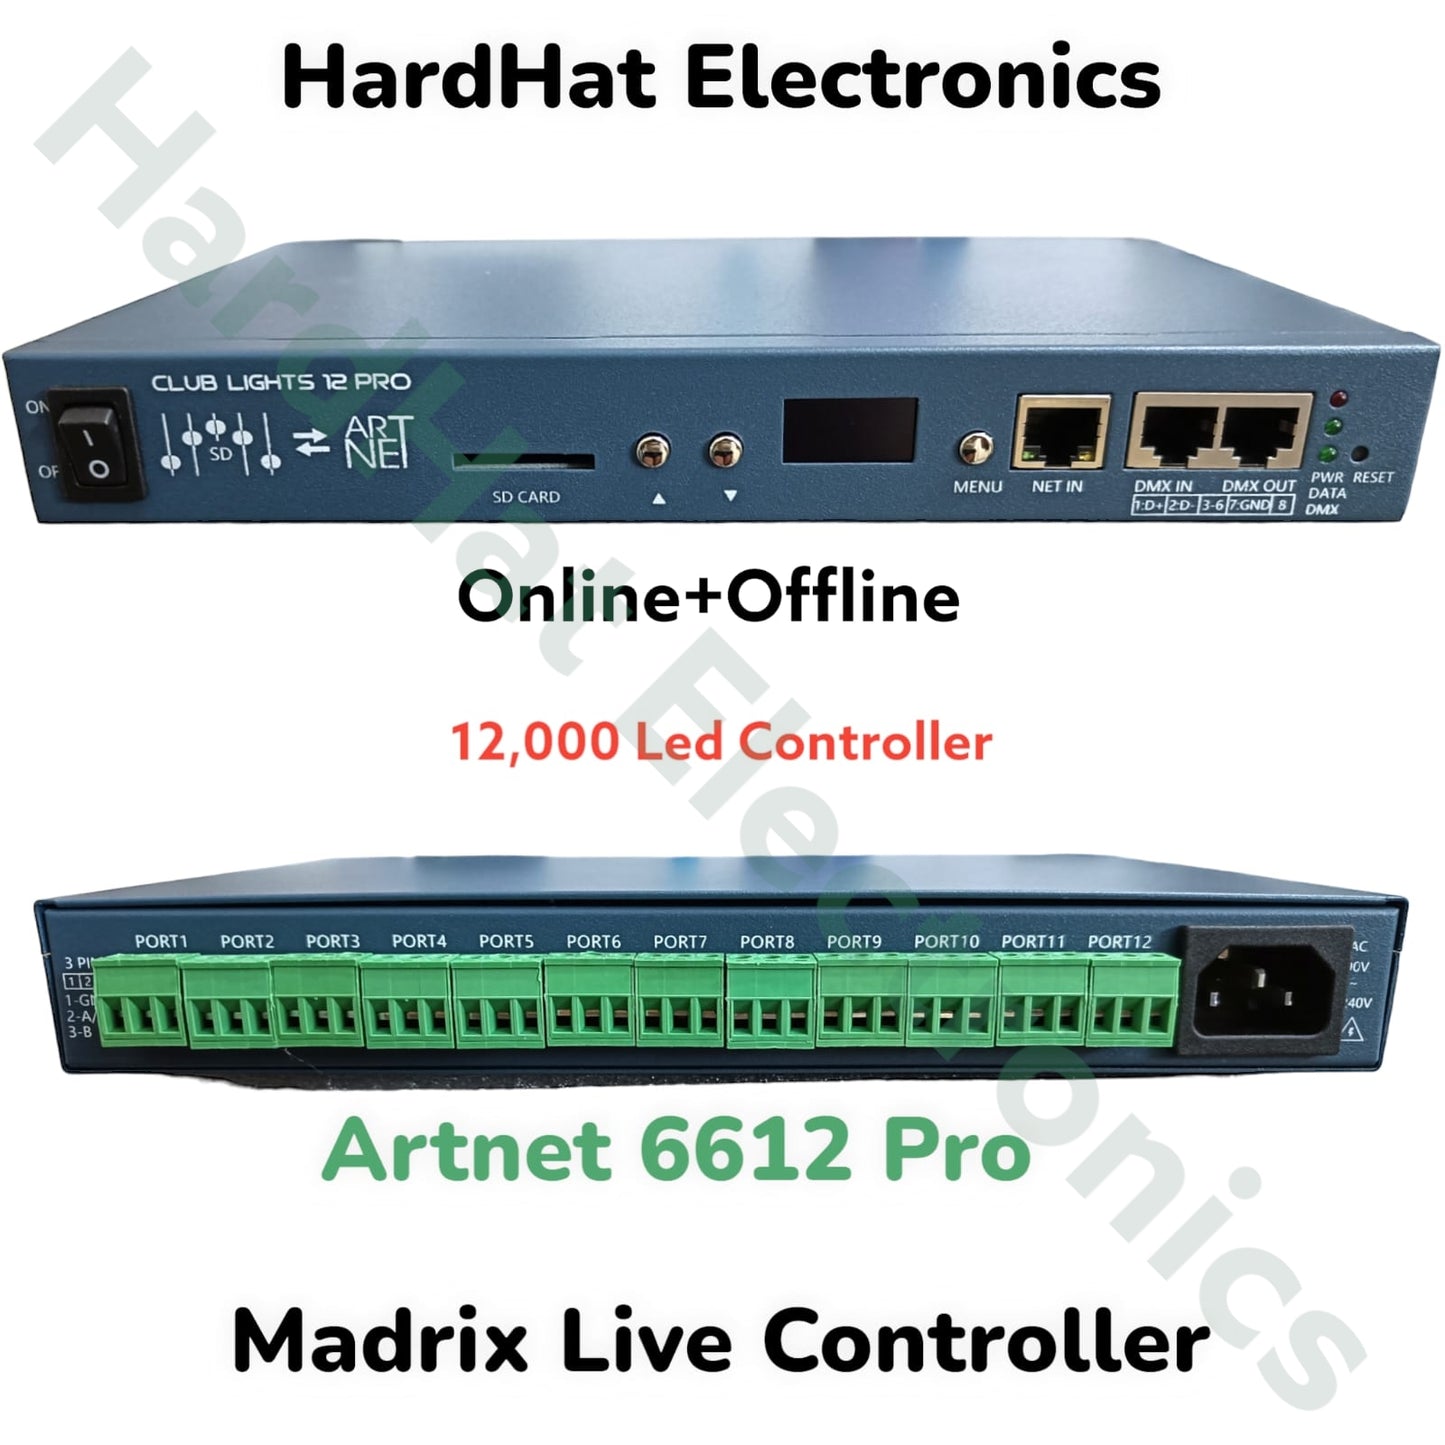 Artnet 6612 Pro